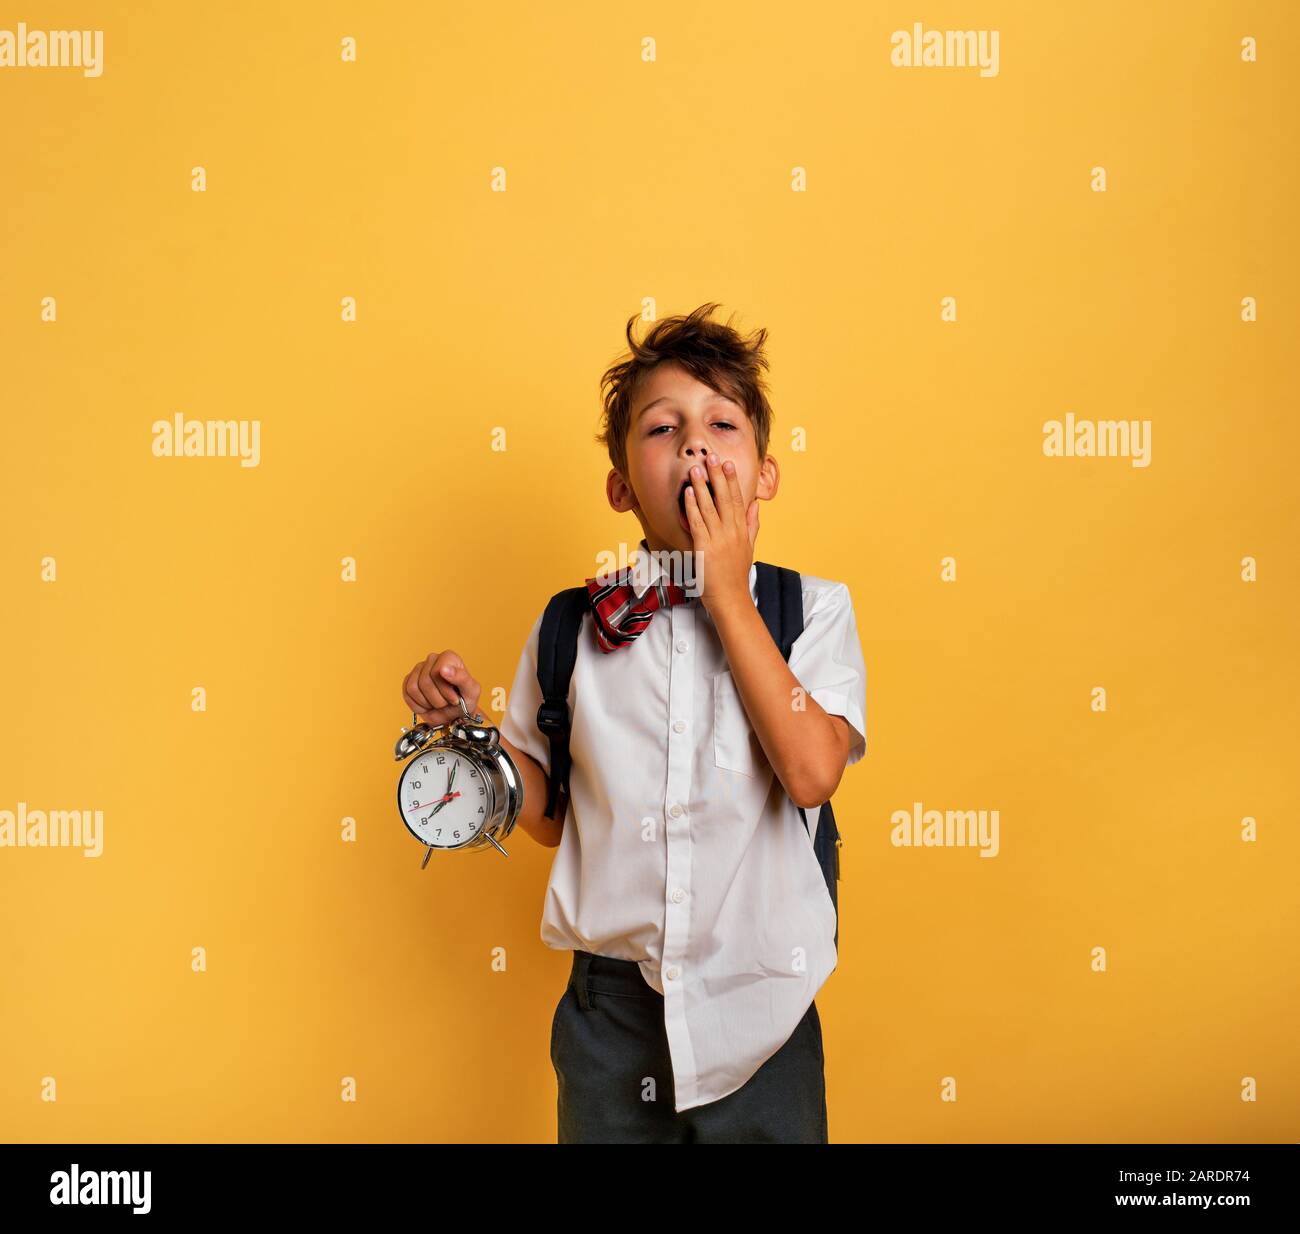 Junge Kind student mit klingelnden Wecker ist faul in die Schule zu gehen. Gelber Hintergrund. Stockfoto